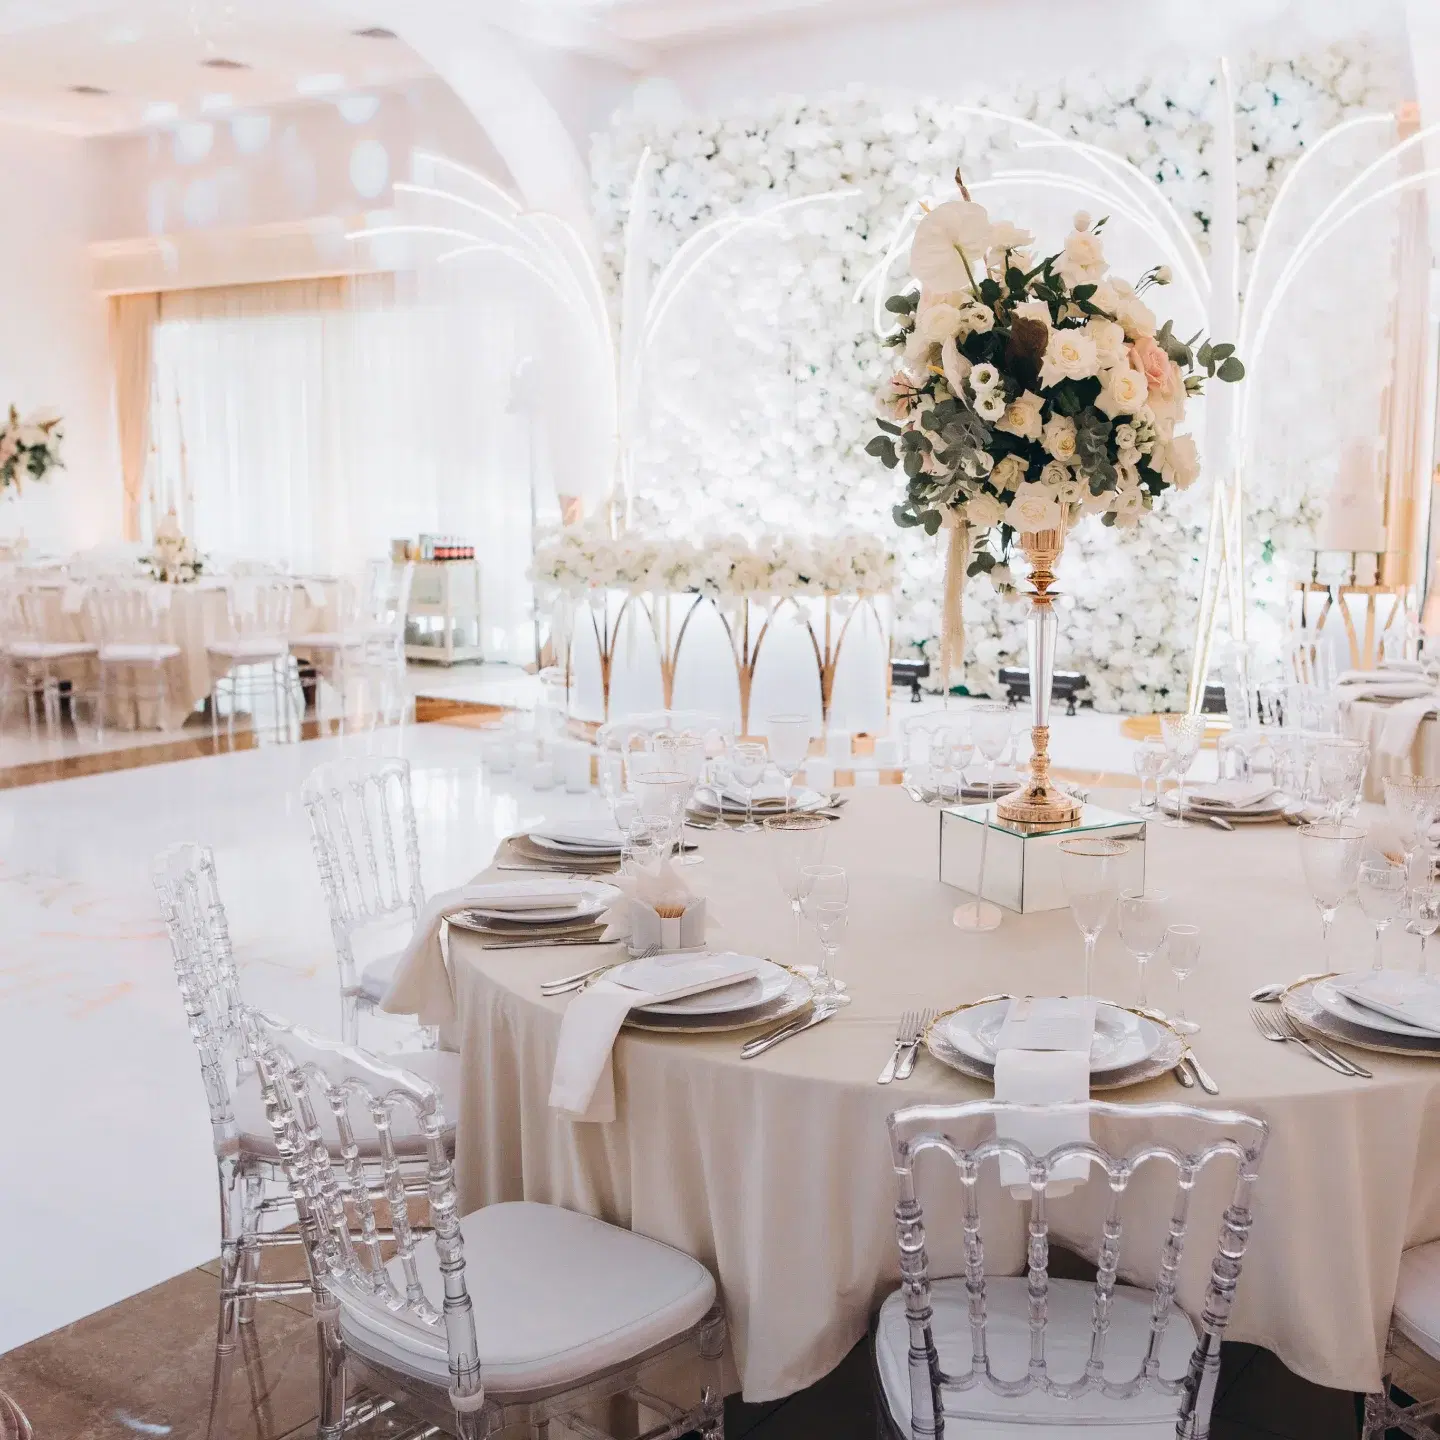 Salon de evenimente elegant, perfect pentru organizarea de nunți și recepții de lux.